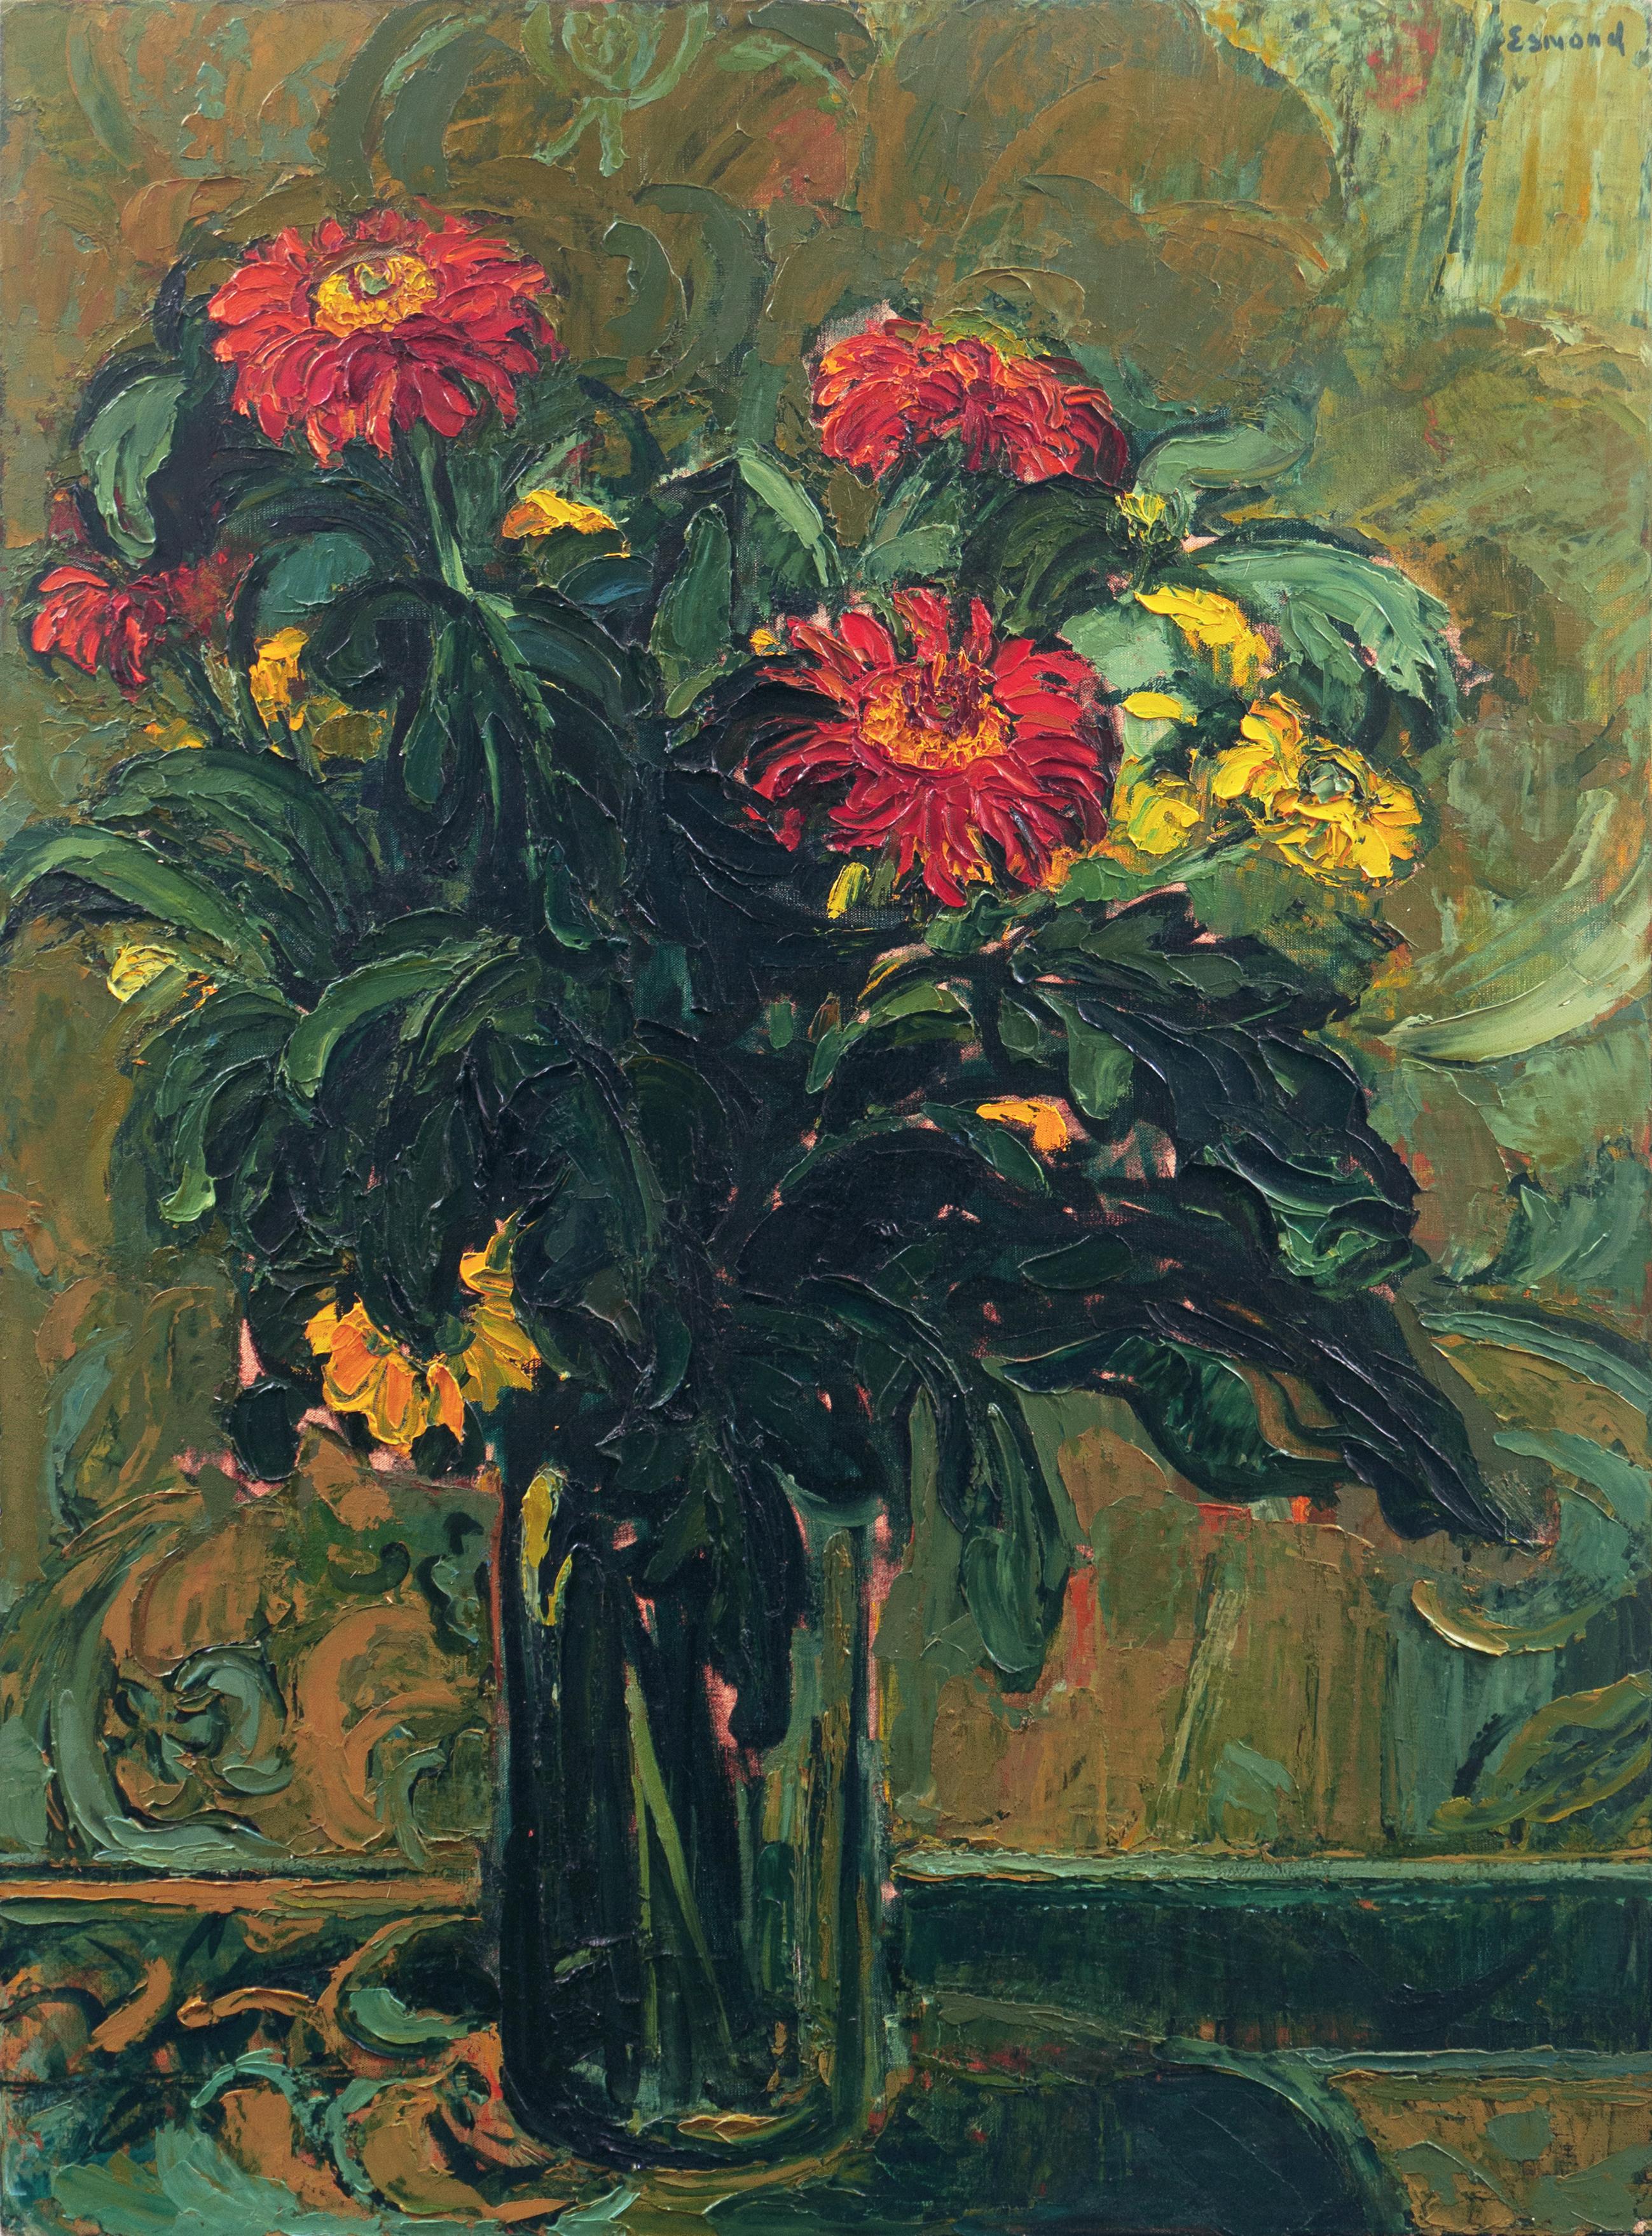 Diane Esmond Still-Life Painting - 'Red Flowers', Salon D’Automne, Grand Palais, Paris, New York, London, Large Oil